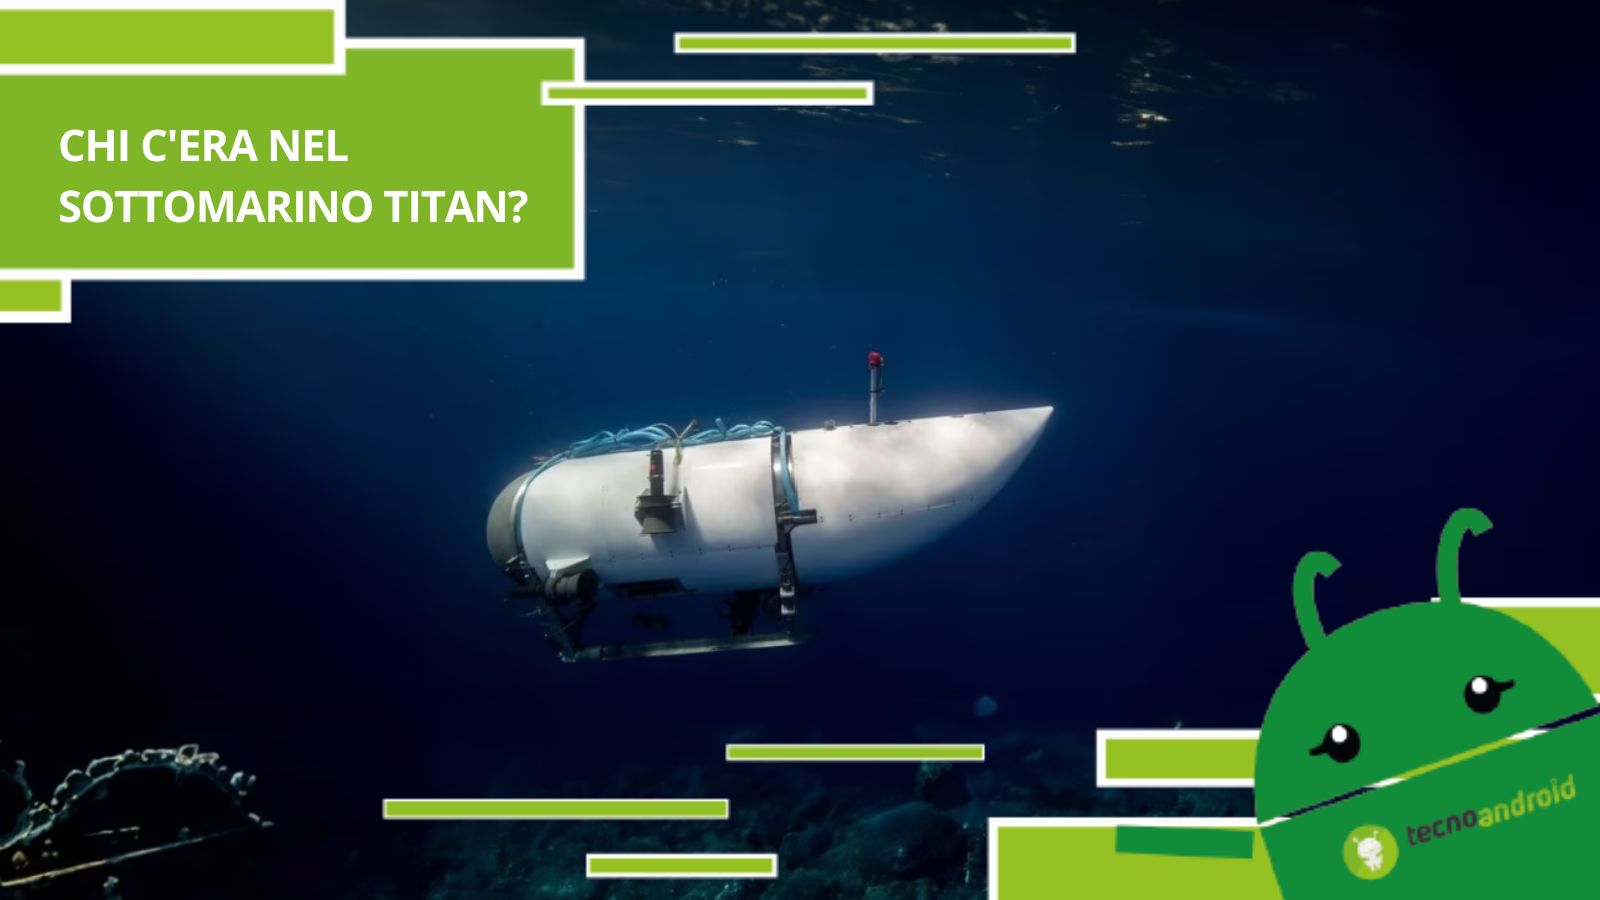 Titan, chi c'era all'interno del sottomarino e come sono andate le cose